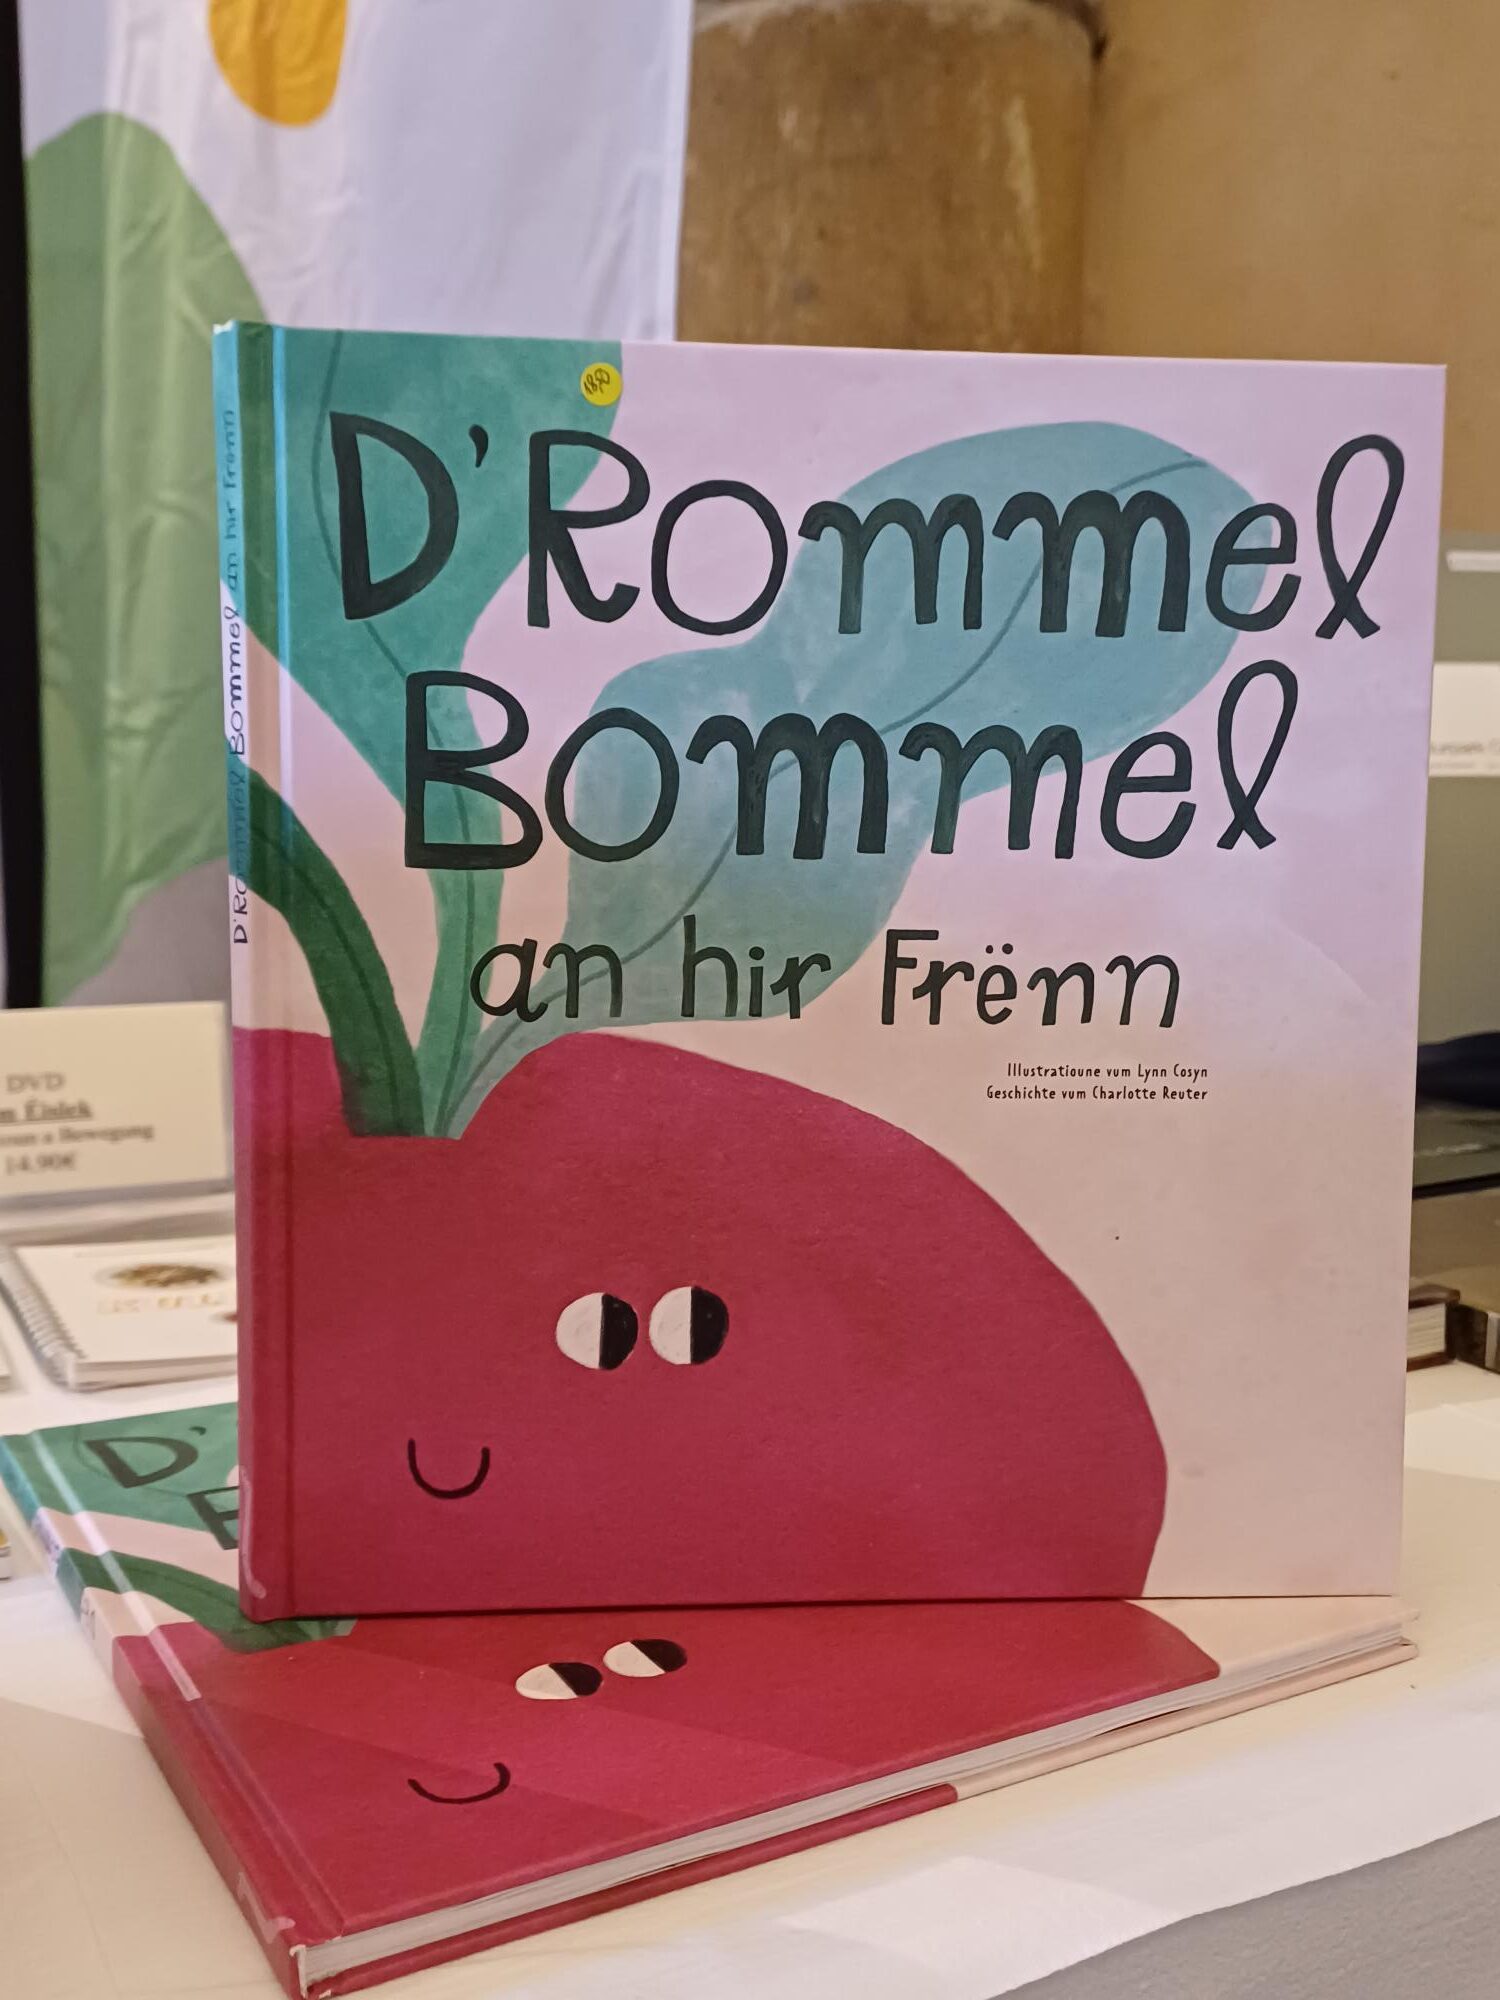 Expérience gustative à la betterave rouge du livre "D'Rommel Bommel et ses amis"